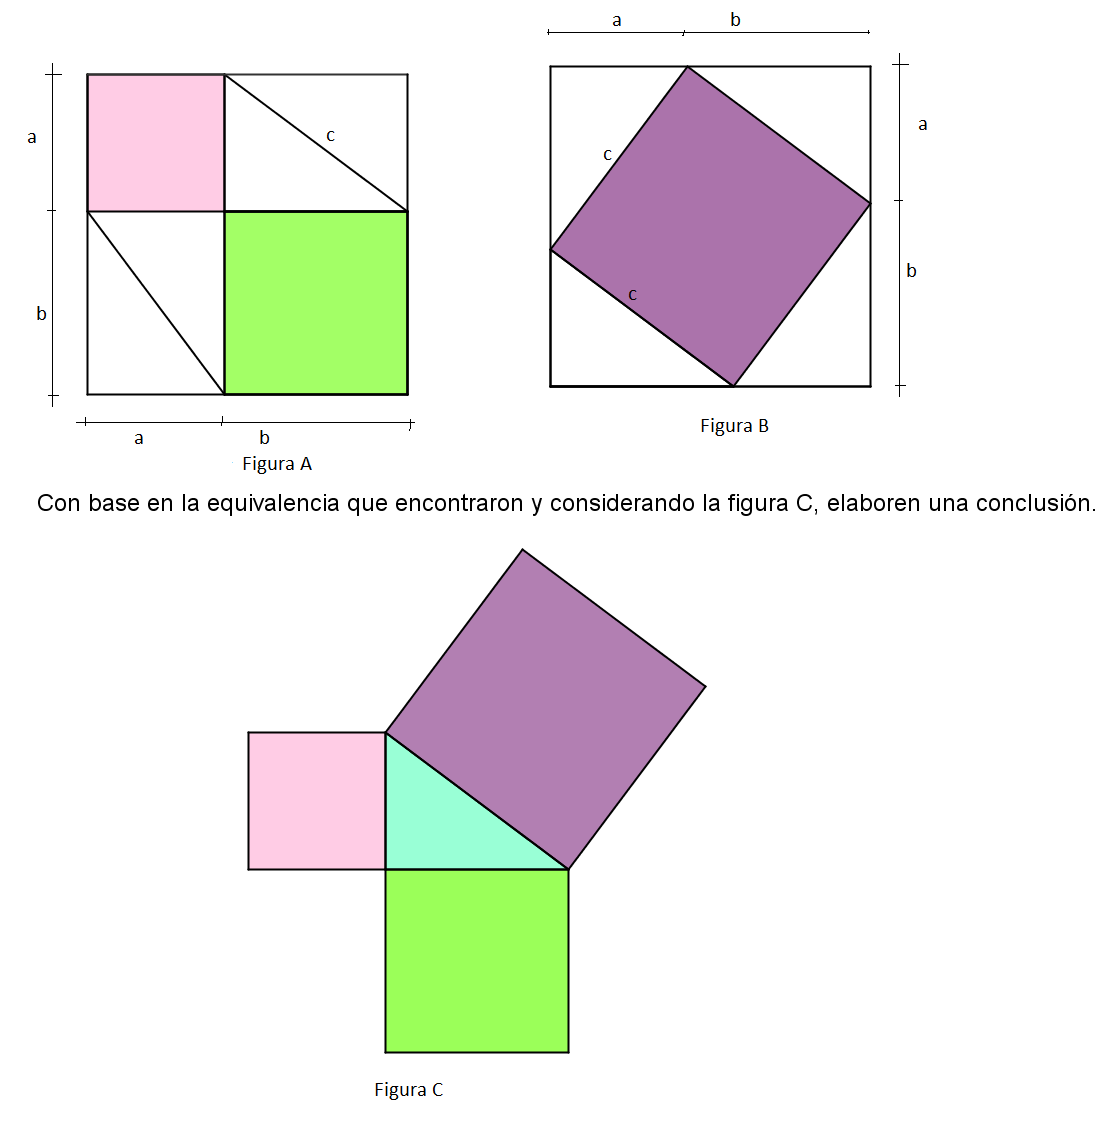 Consigna 2: En la misma bina, analicen las siguientes figuras y comprueben algebraicamente